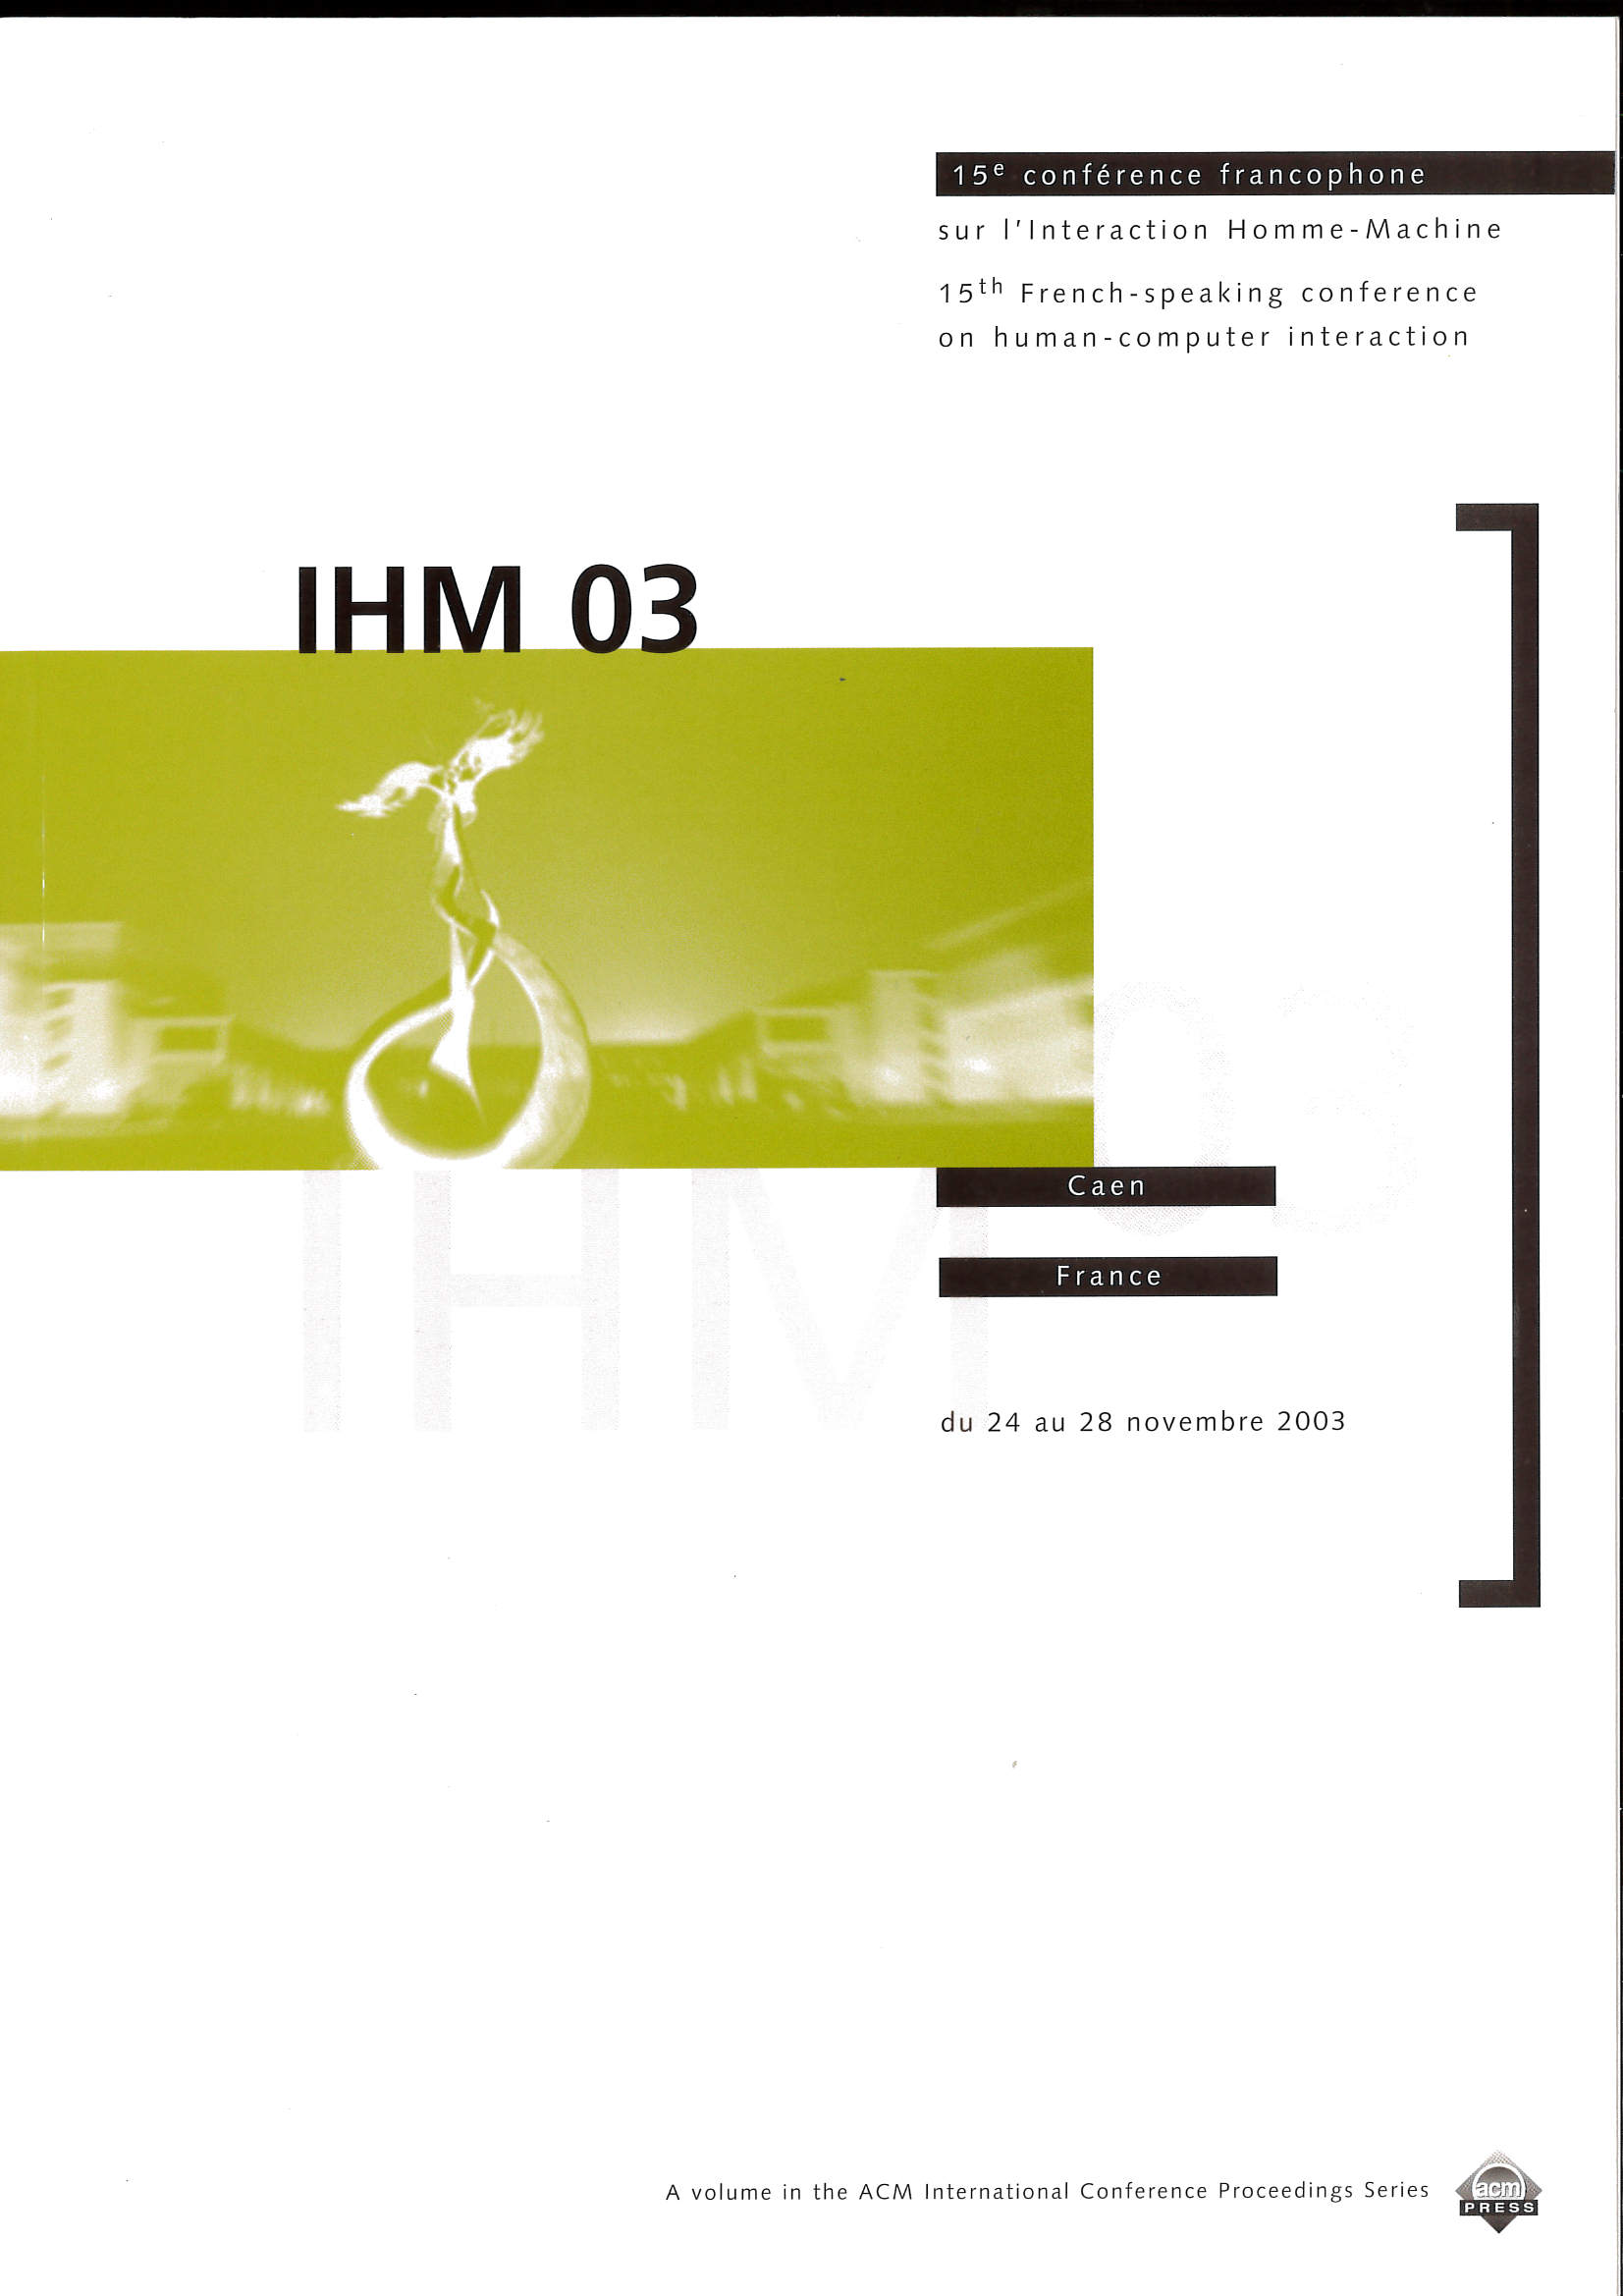 IHM 2003 - Caen